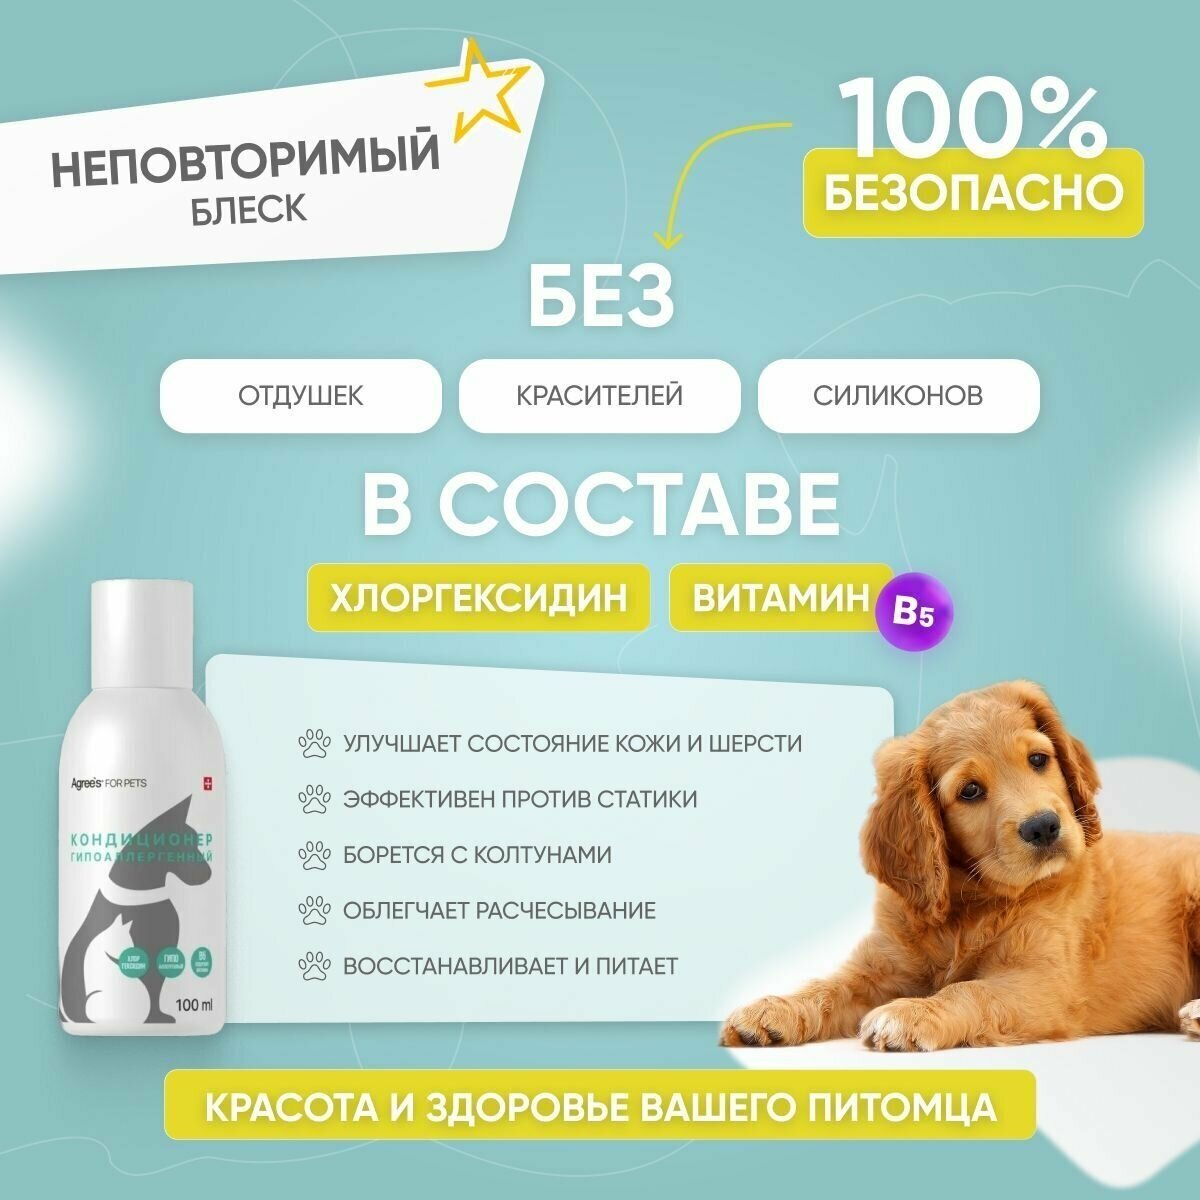 Кондиционер от аллергии и зуда для собак и кошек ANTIBACTERIAL, 100 мл косметика для животных - фотография № 3